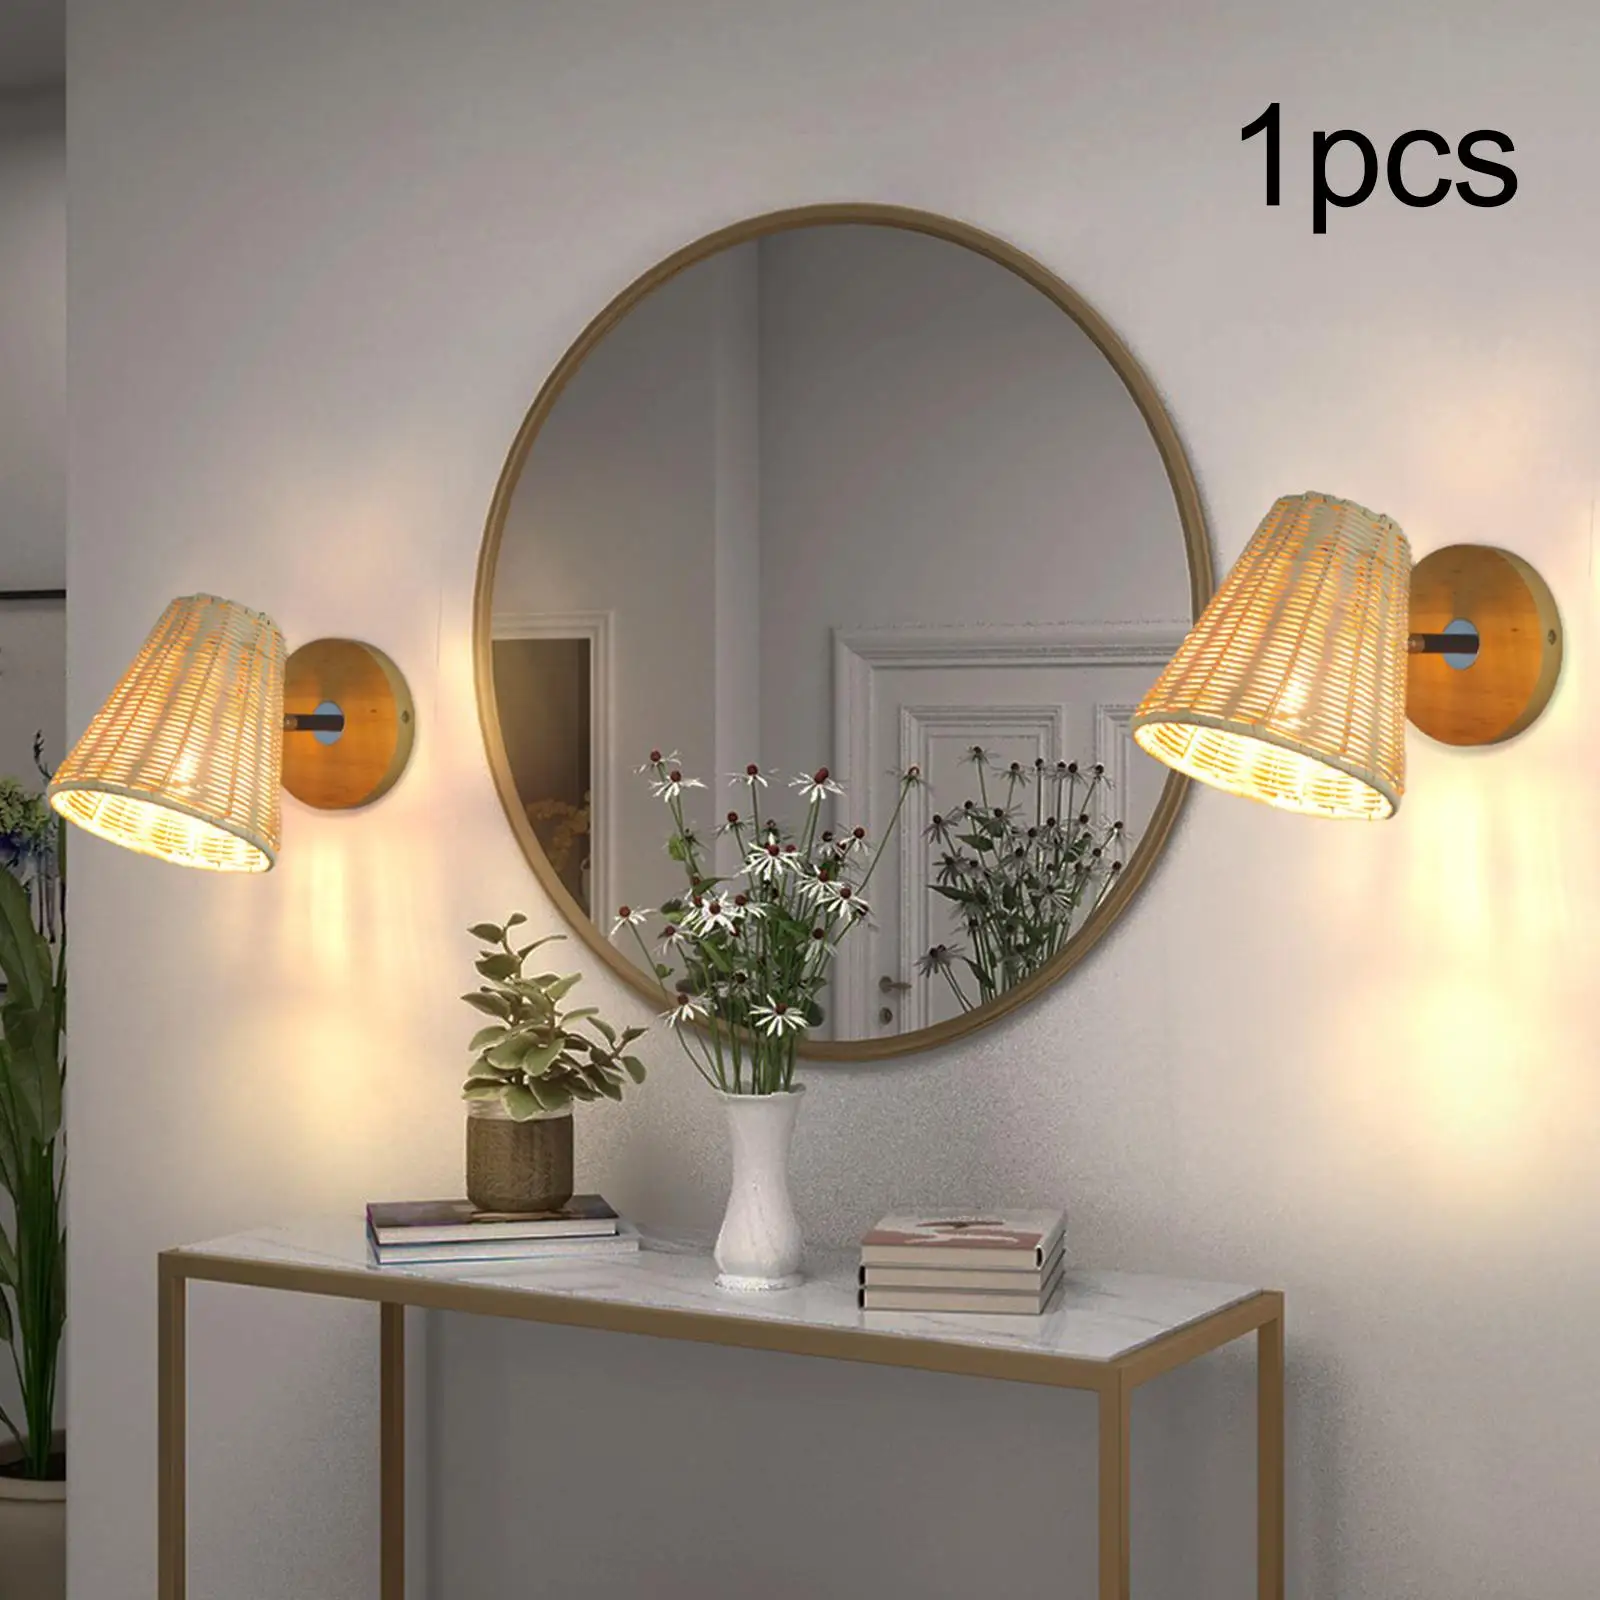 Thiết kế đèn để bàn gắn tường đơn giản